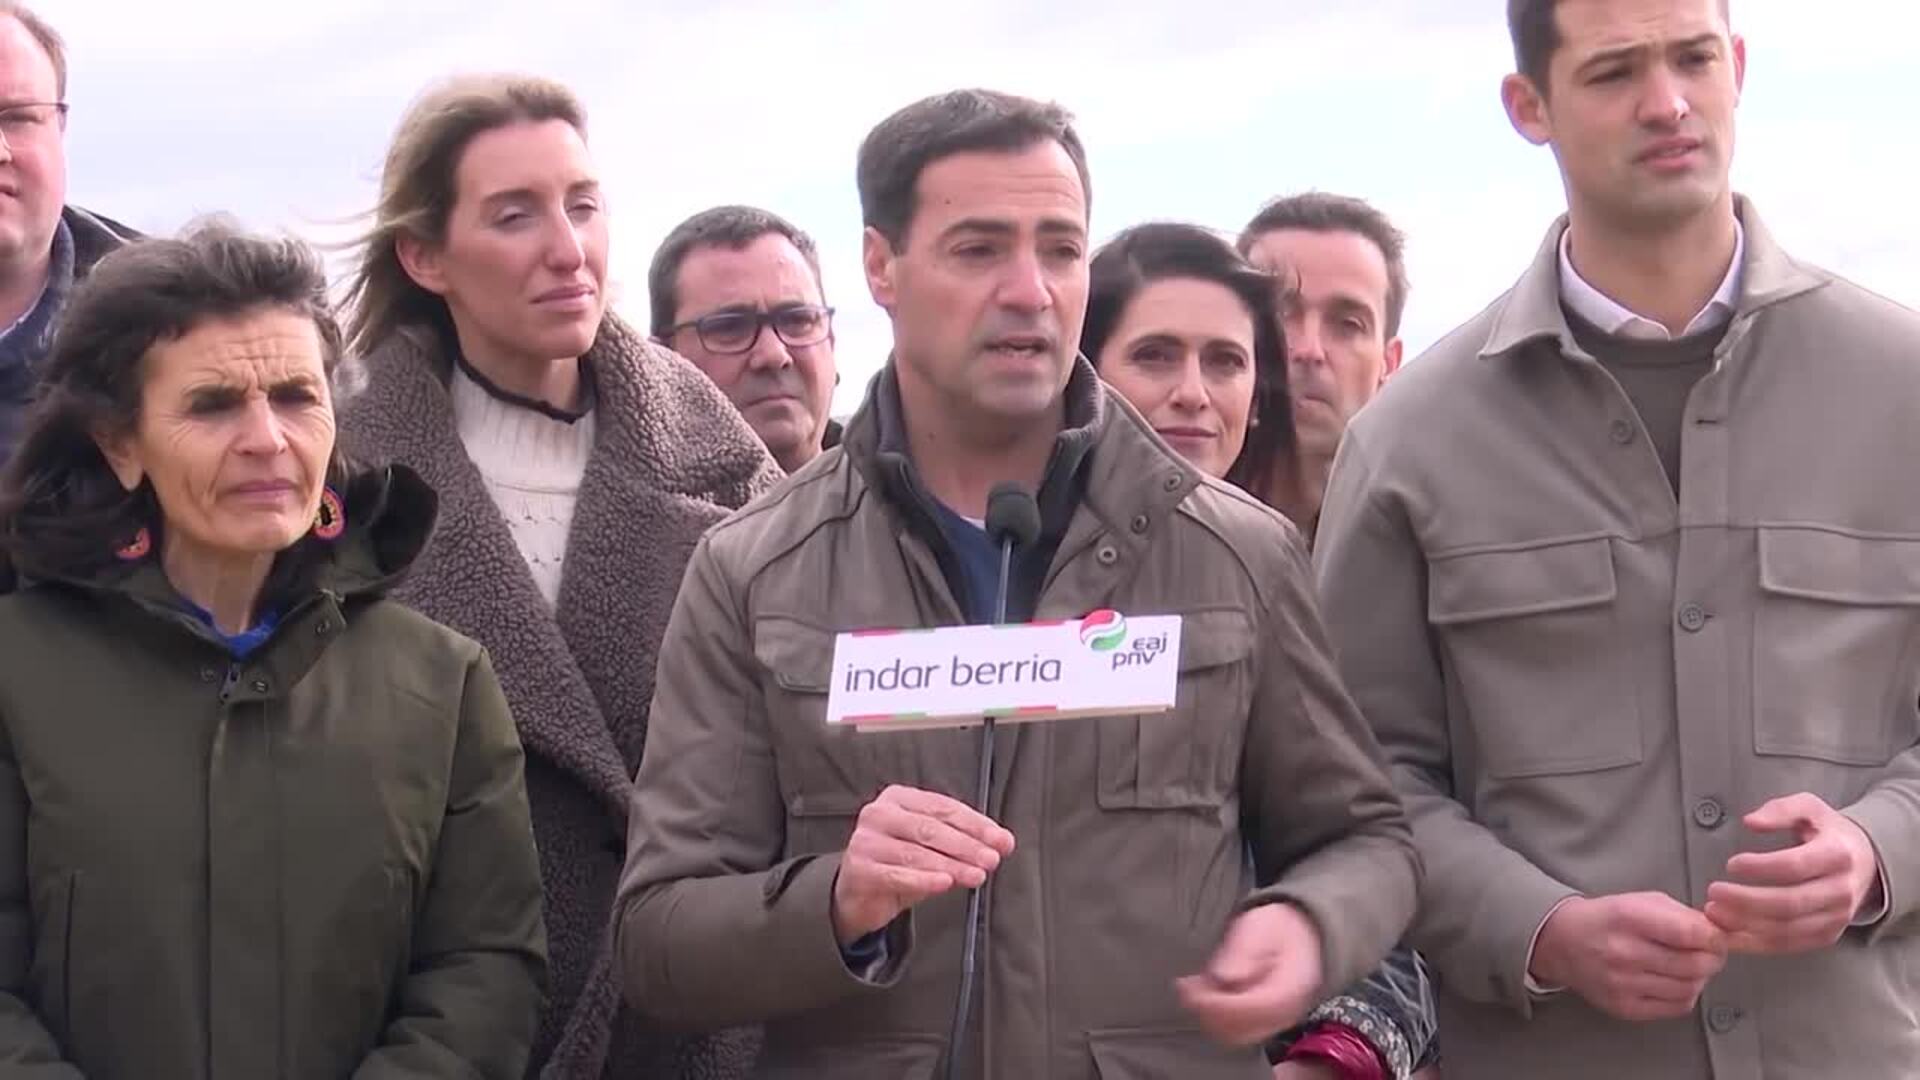 Pradales (PNV) vaticina una "pelea intensa" para ganar las elecciones vascas